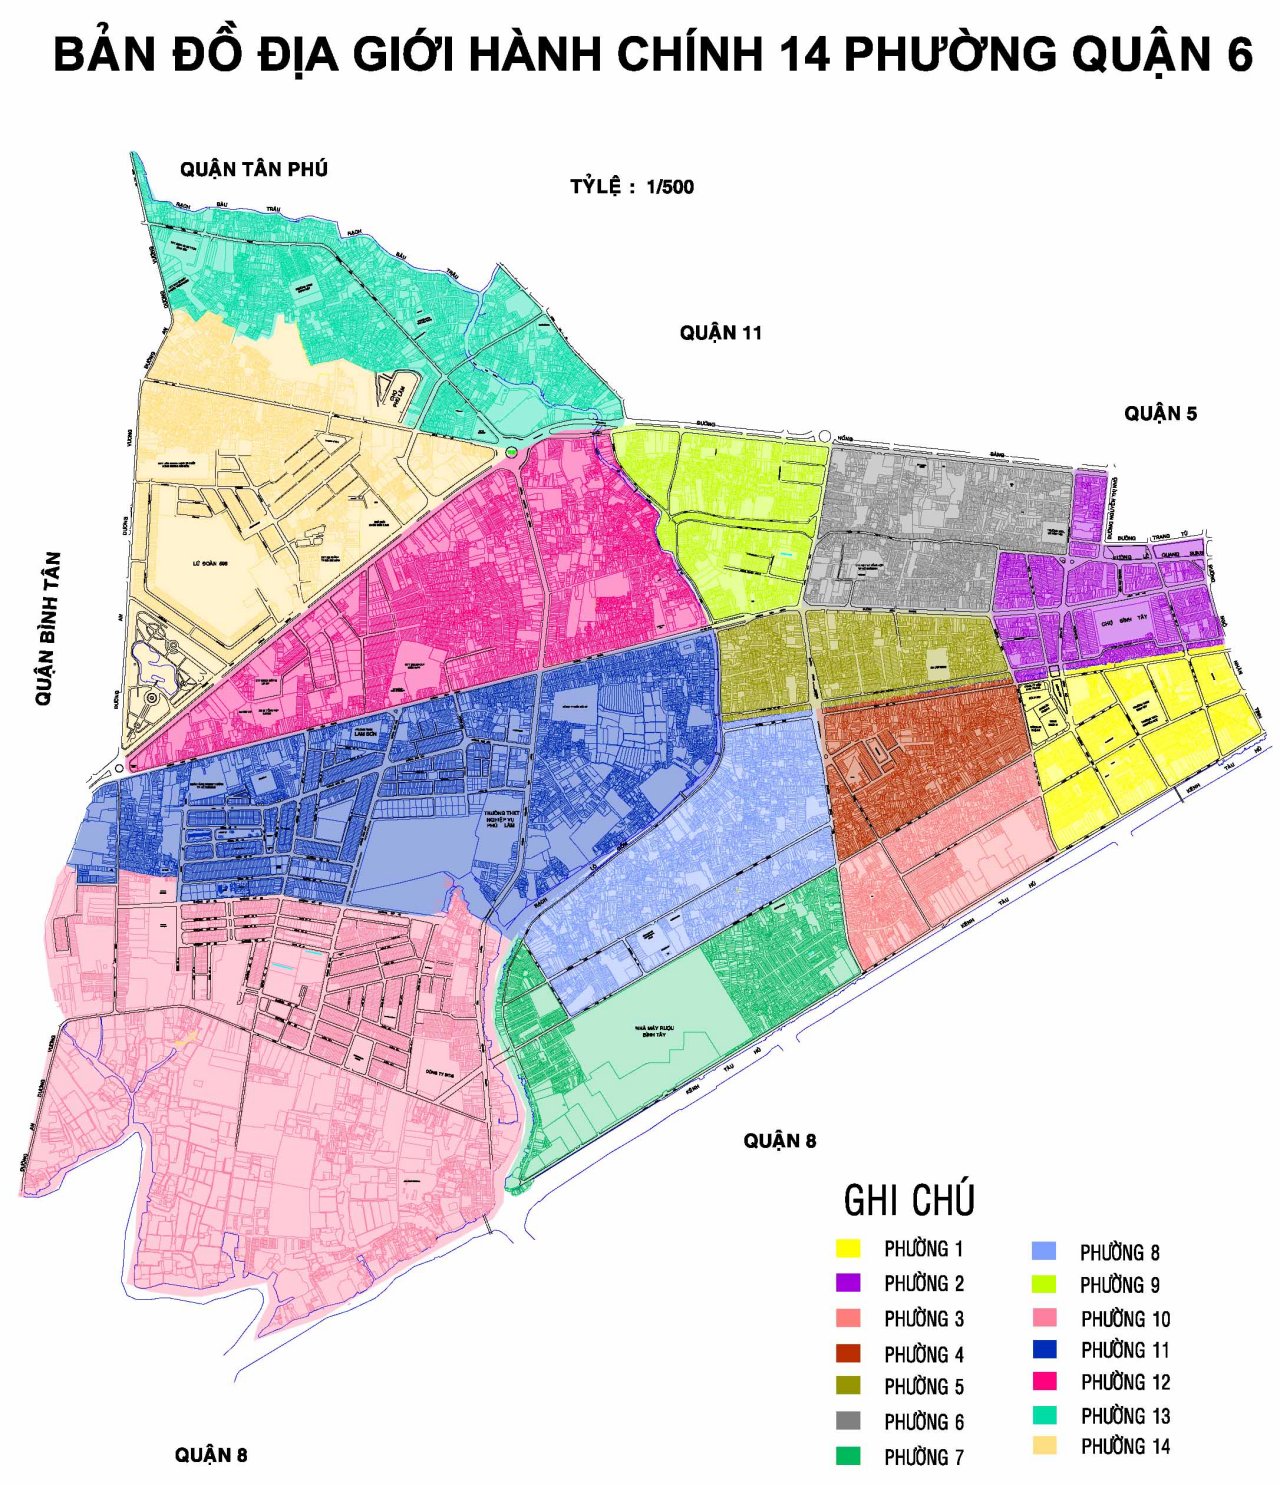 Tìm kiếm bản đồ Quận 6 TPHCM khổ lớn năm 2024 để biết thêm chi tiết về kế hoạch phát triển đầy hứa hẹn mới nhất của quận. Hãy sẵn sàng để khám phá những điểm đến mới và thú vị sắp tới!